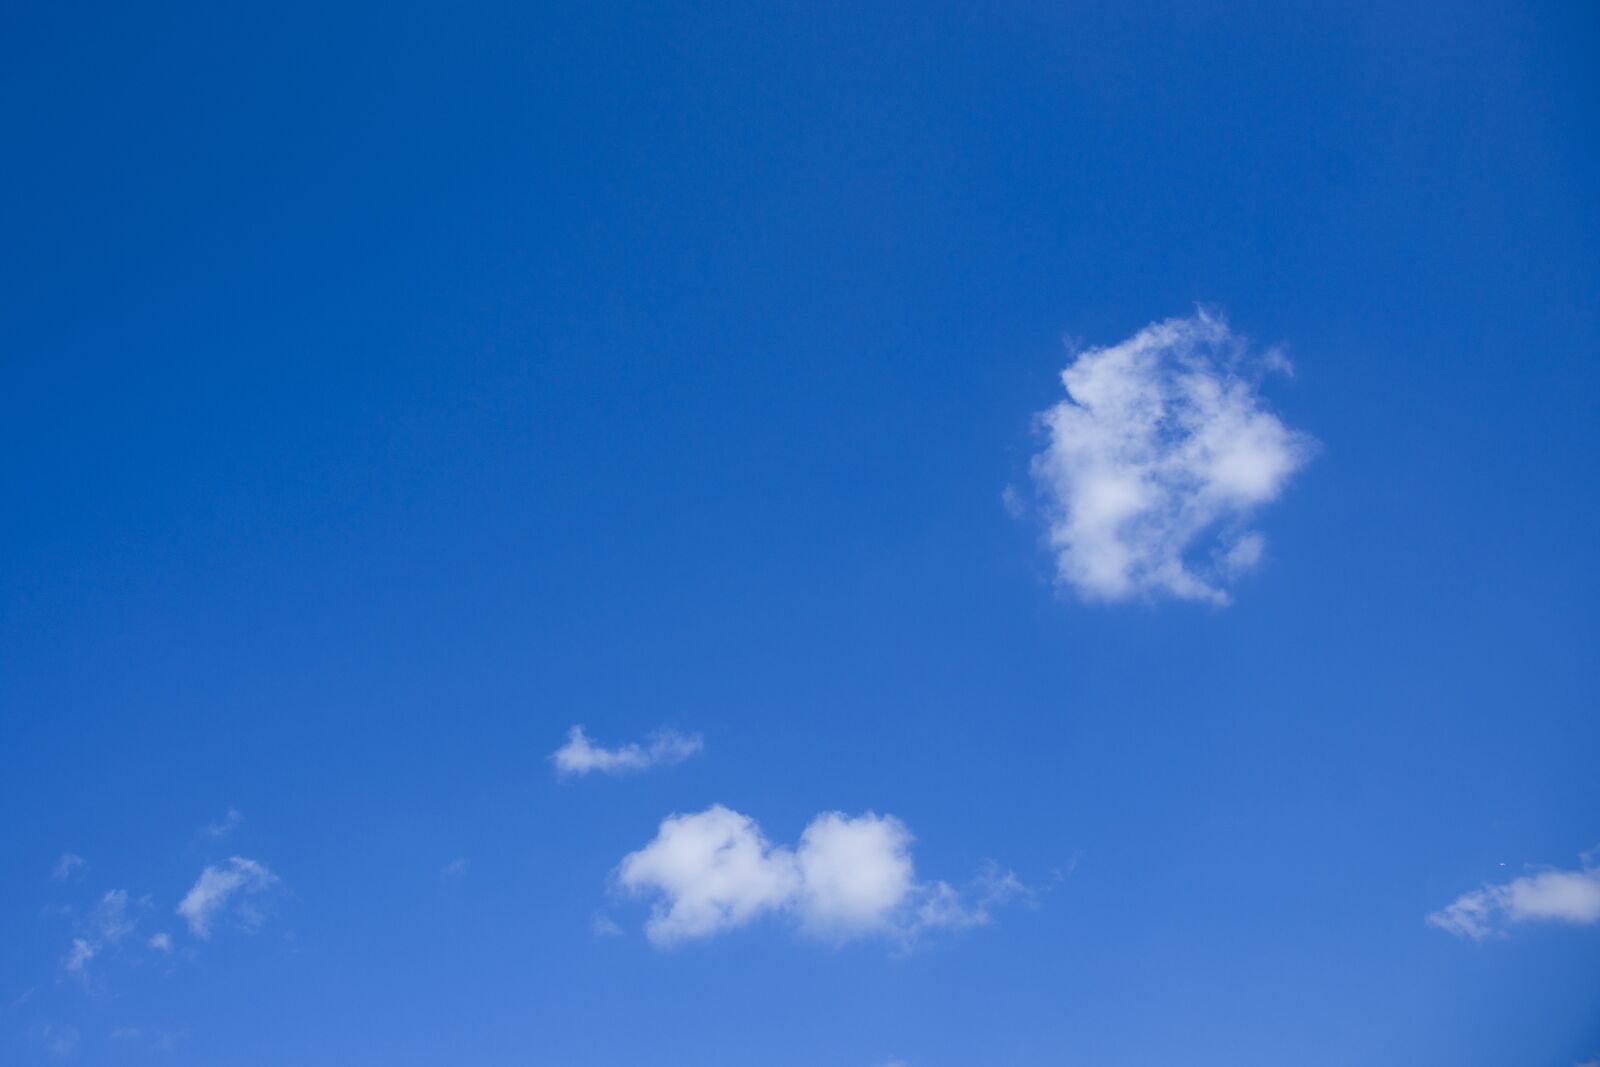 Sony Alpha DSLR-A850 sample photo. Sky, cloud, air photography